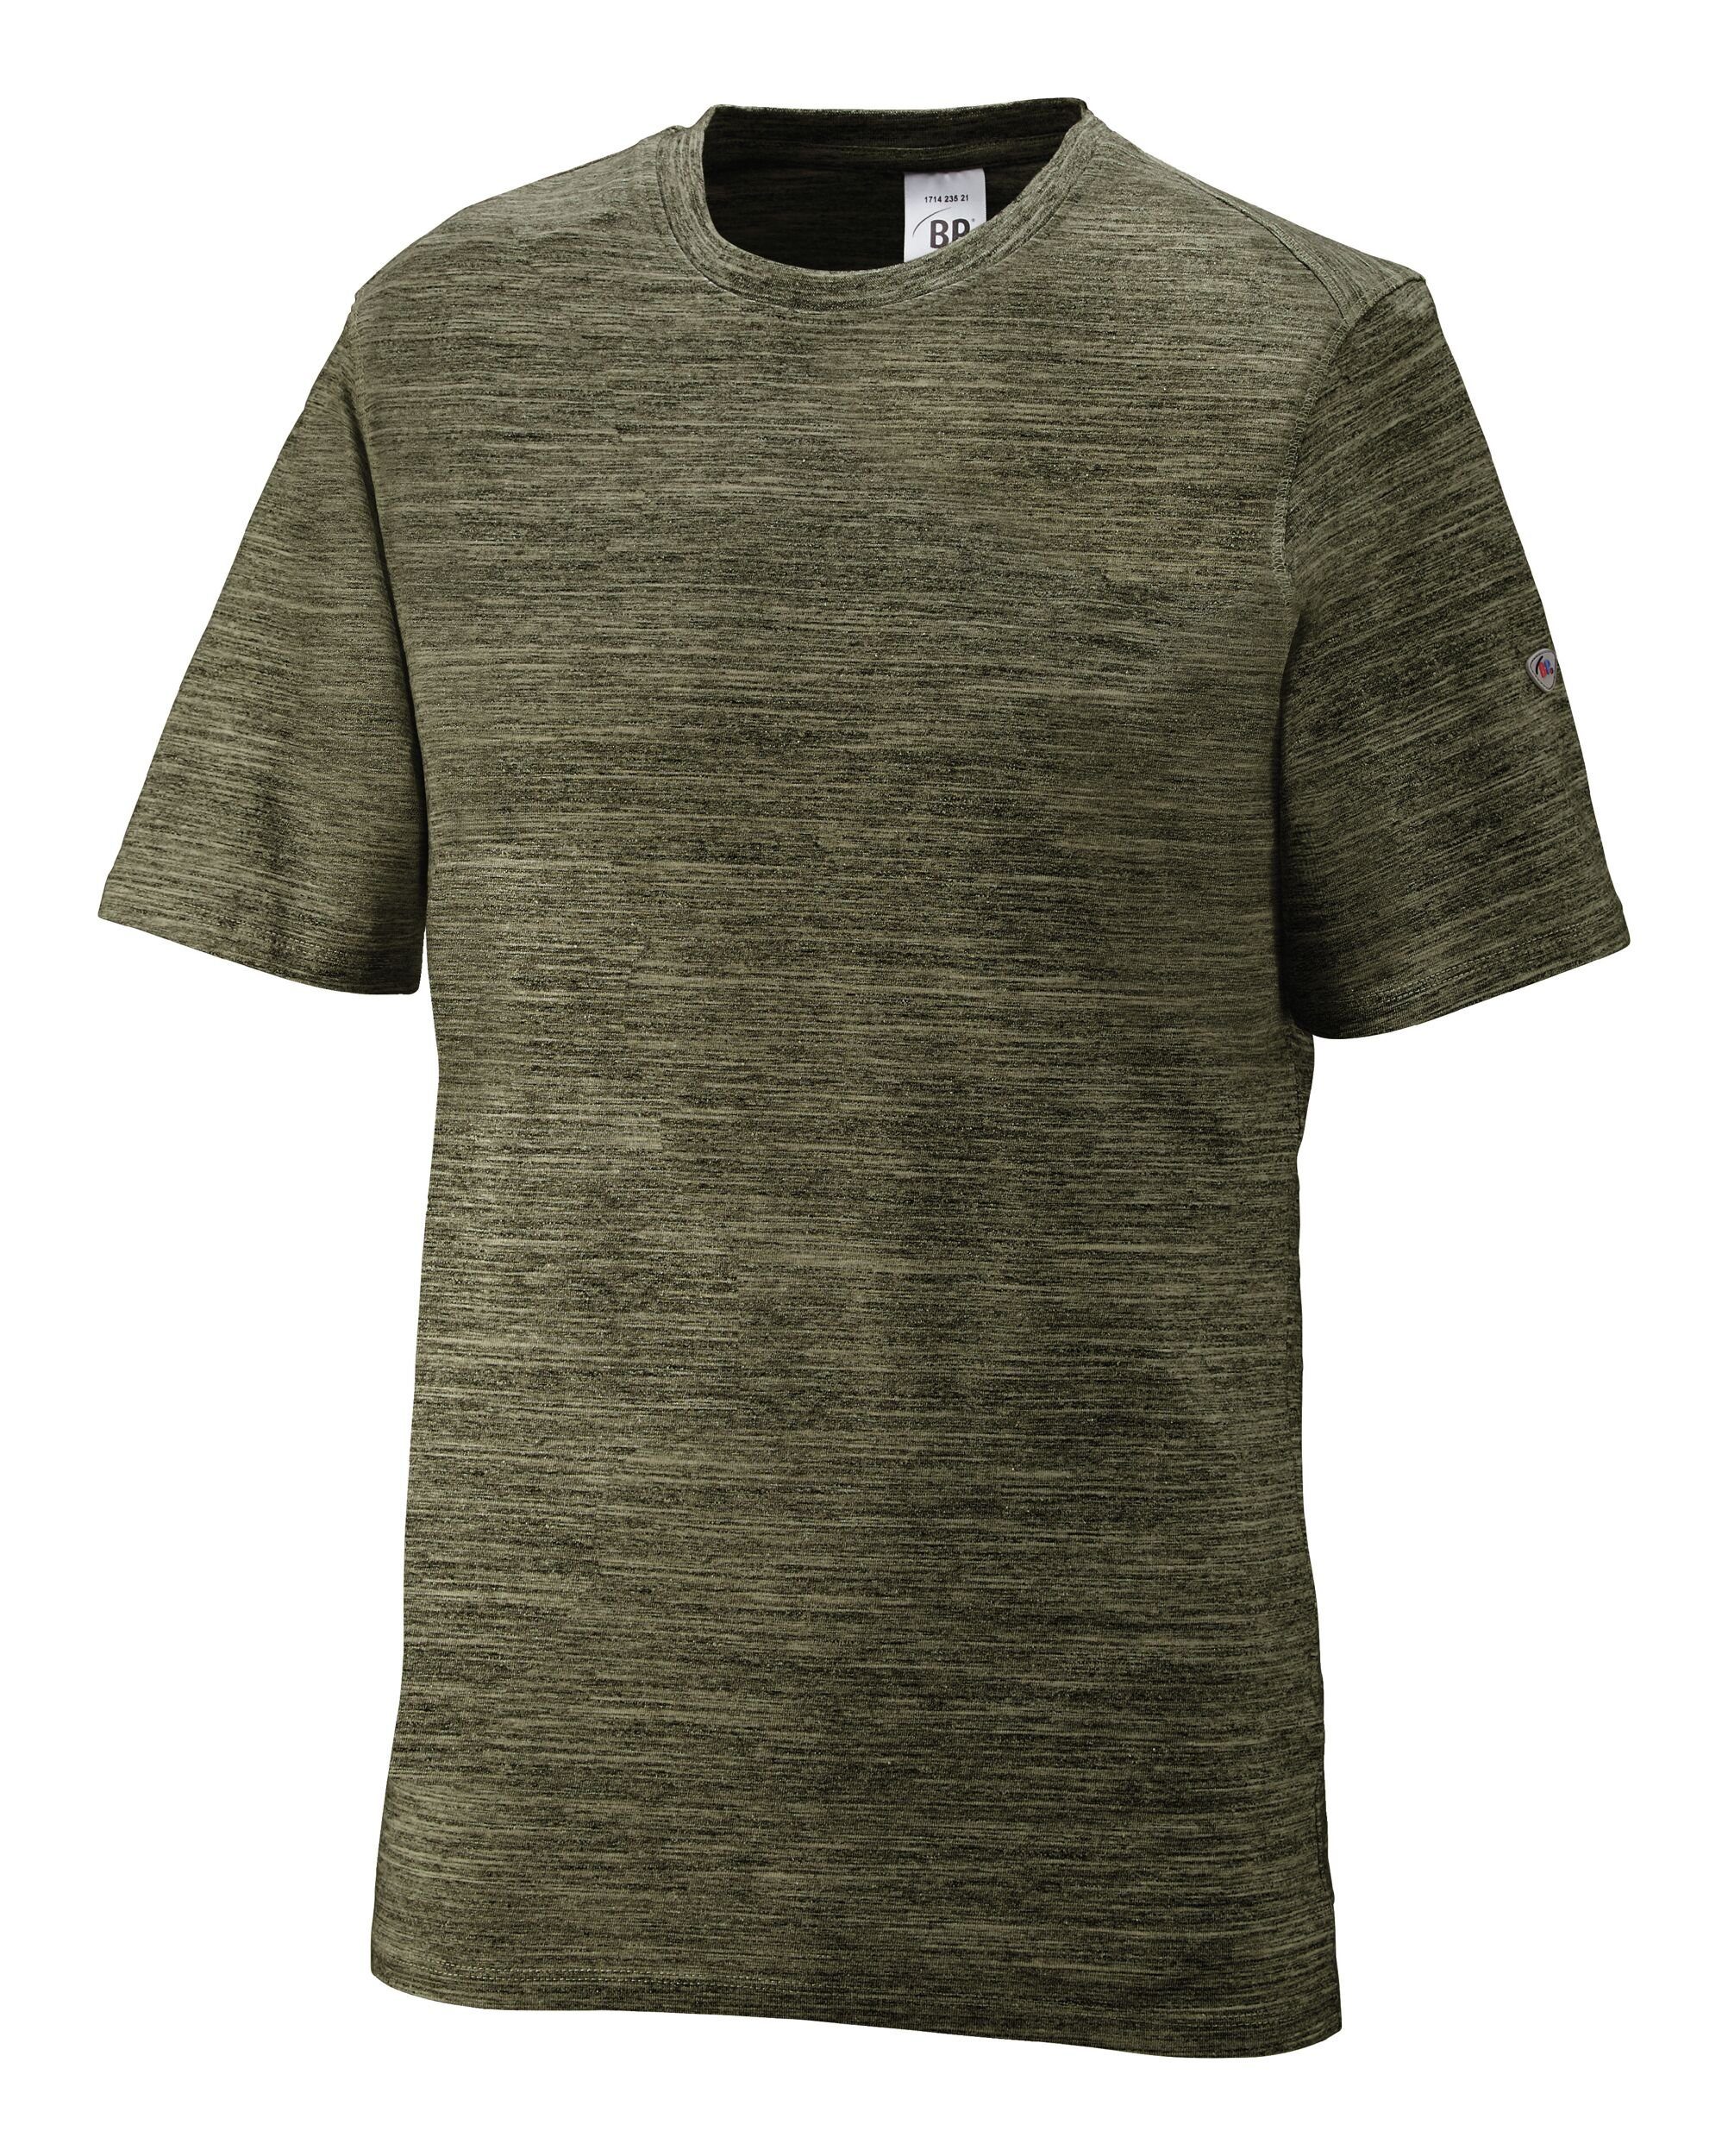 bp T-Shirt 1714, space oliv, Розмір 2XL